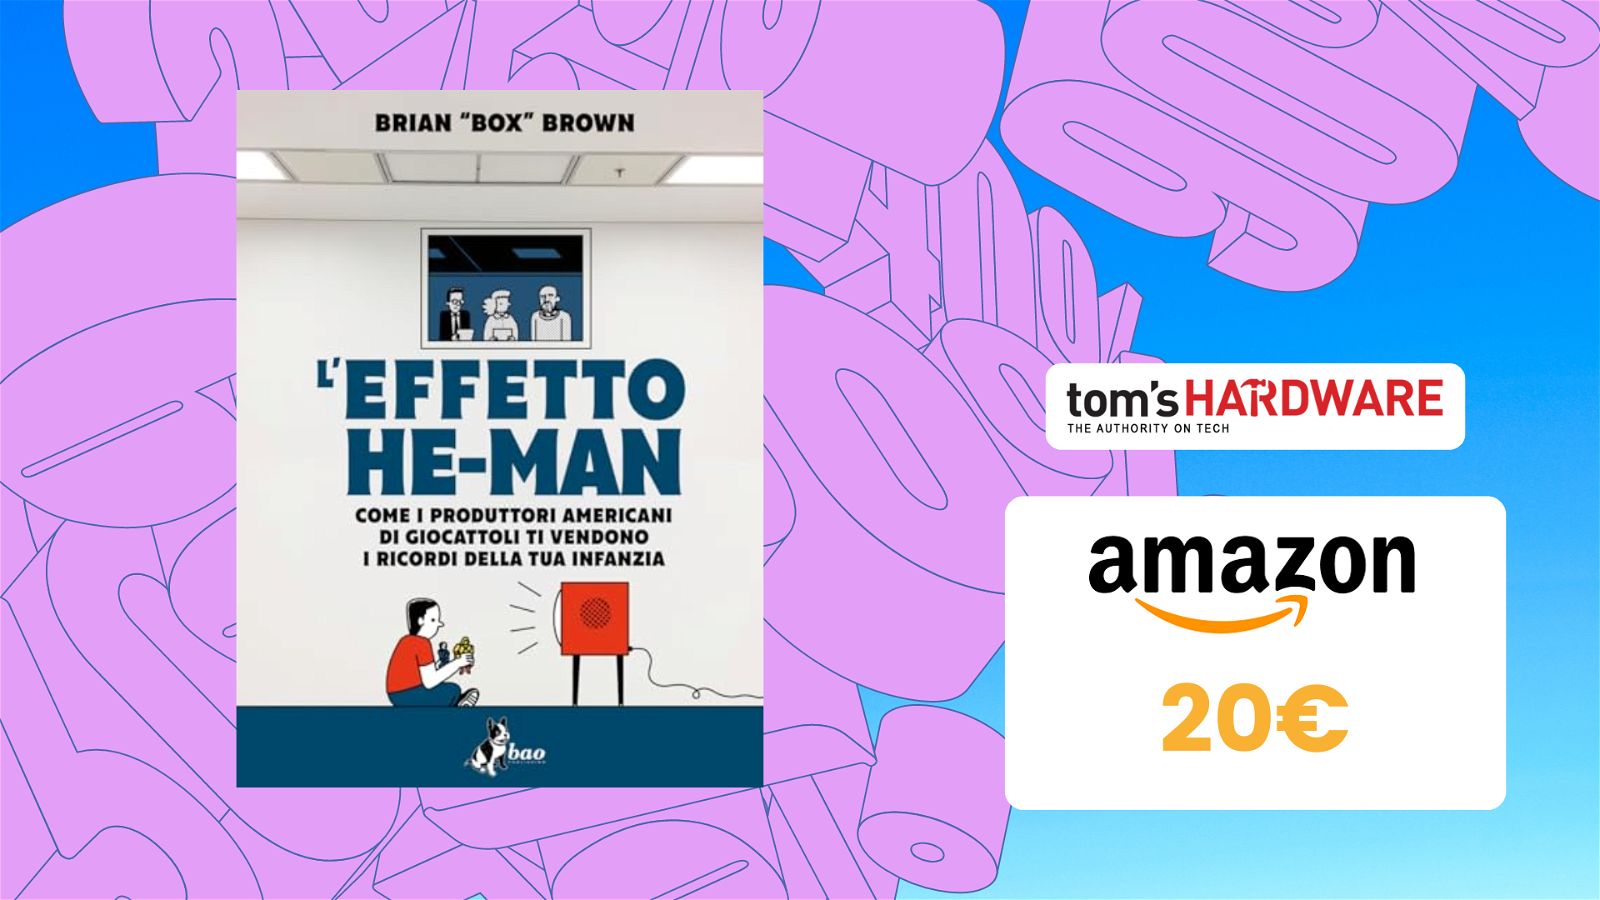 Immagine di Il libro "L'effetto He-Man" è in sconto su Amazon a 20€!